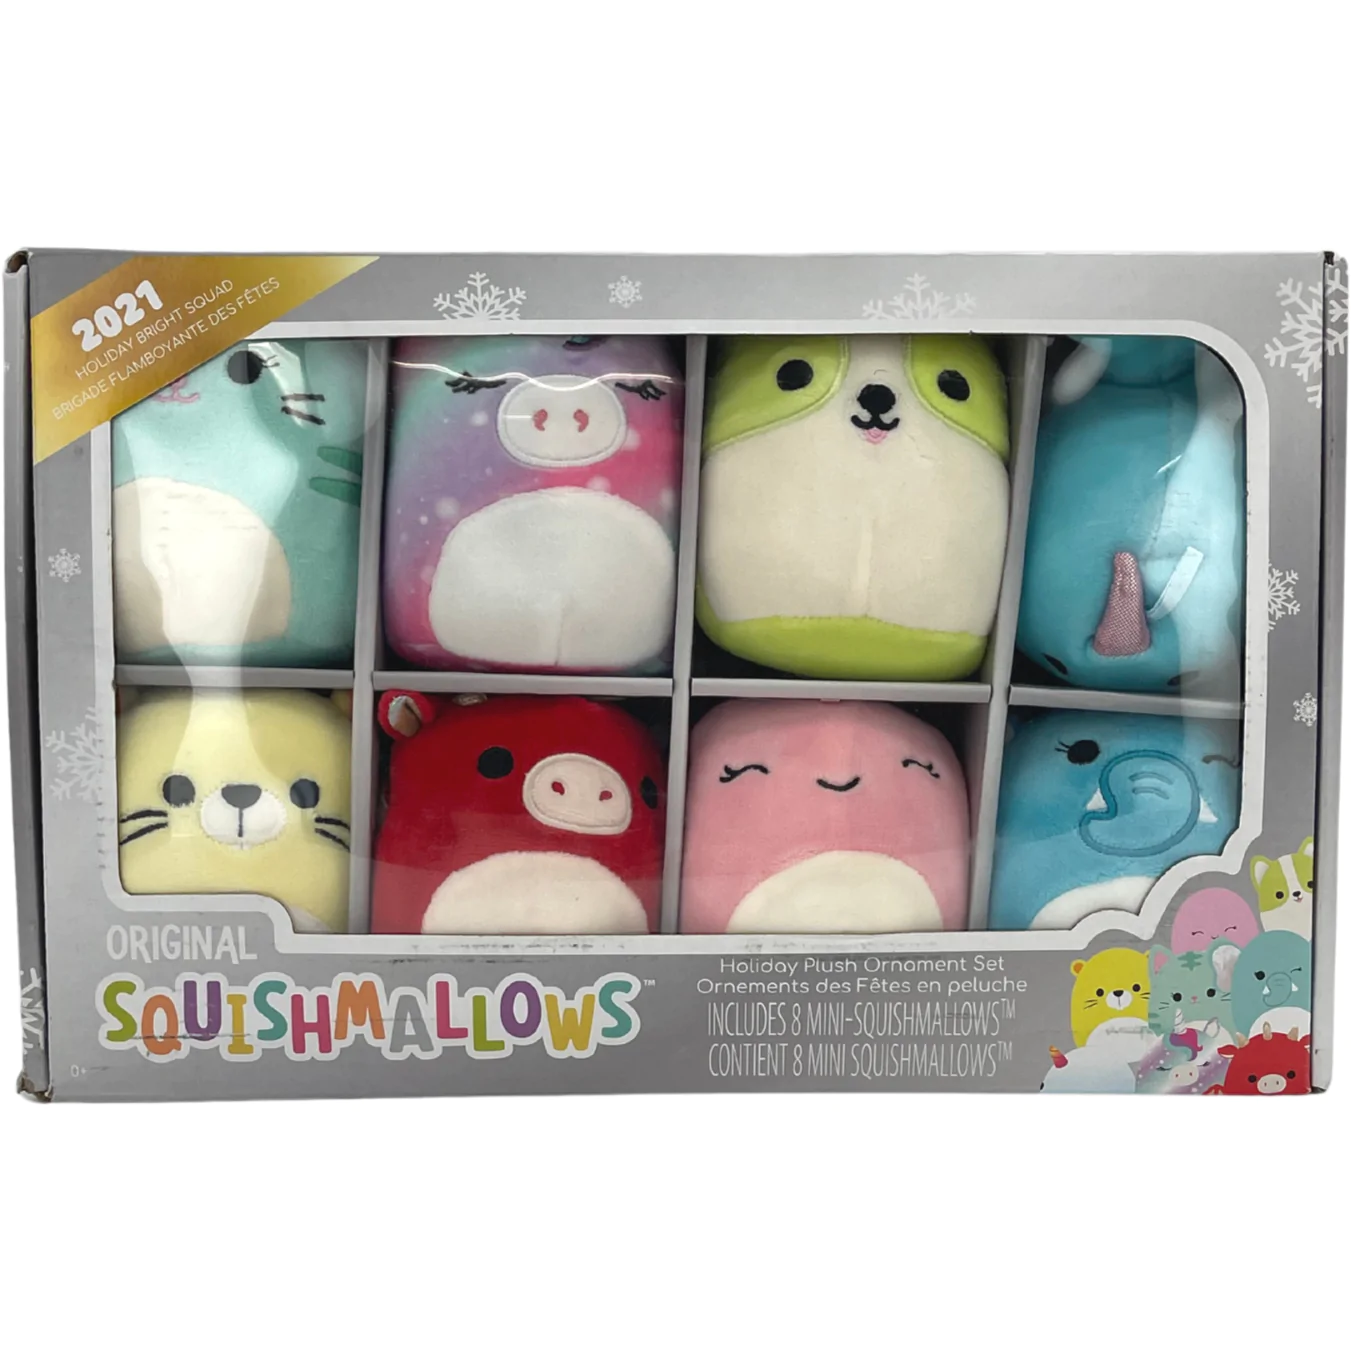 Squishmallows Holiday Plush Ornament Set / 8 Mini Squishmallow / 2021 Holiday Bright Squad